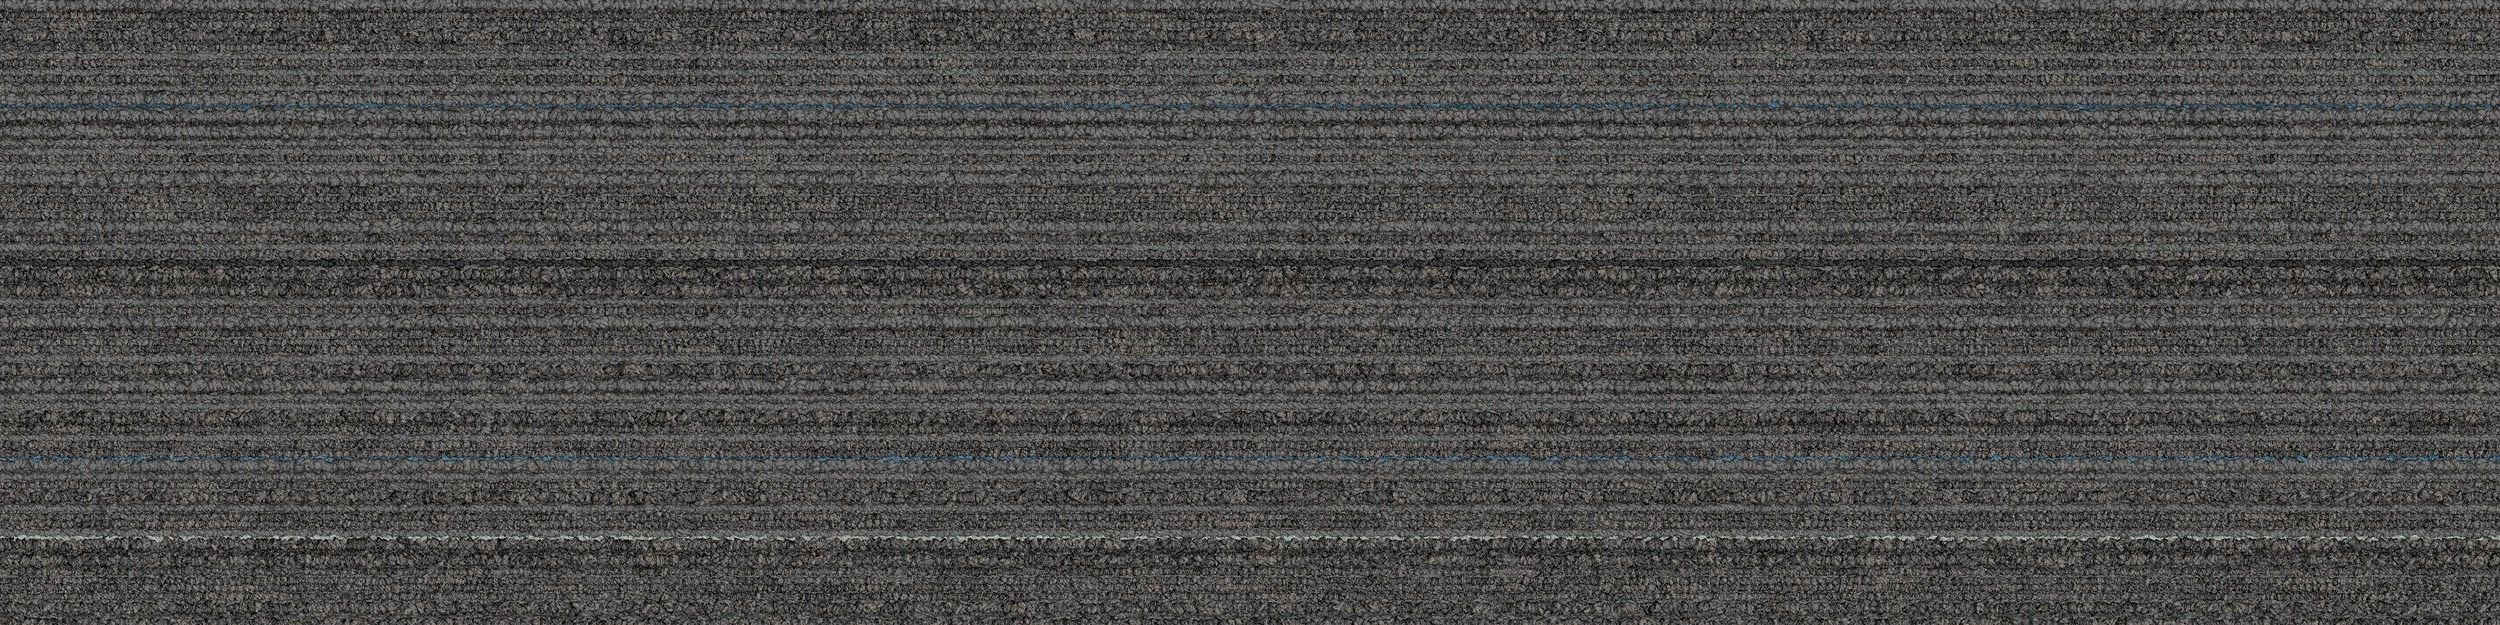 SL920 Carpet Tile In Graphite Line image number 2